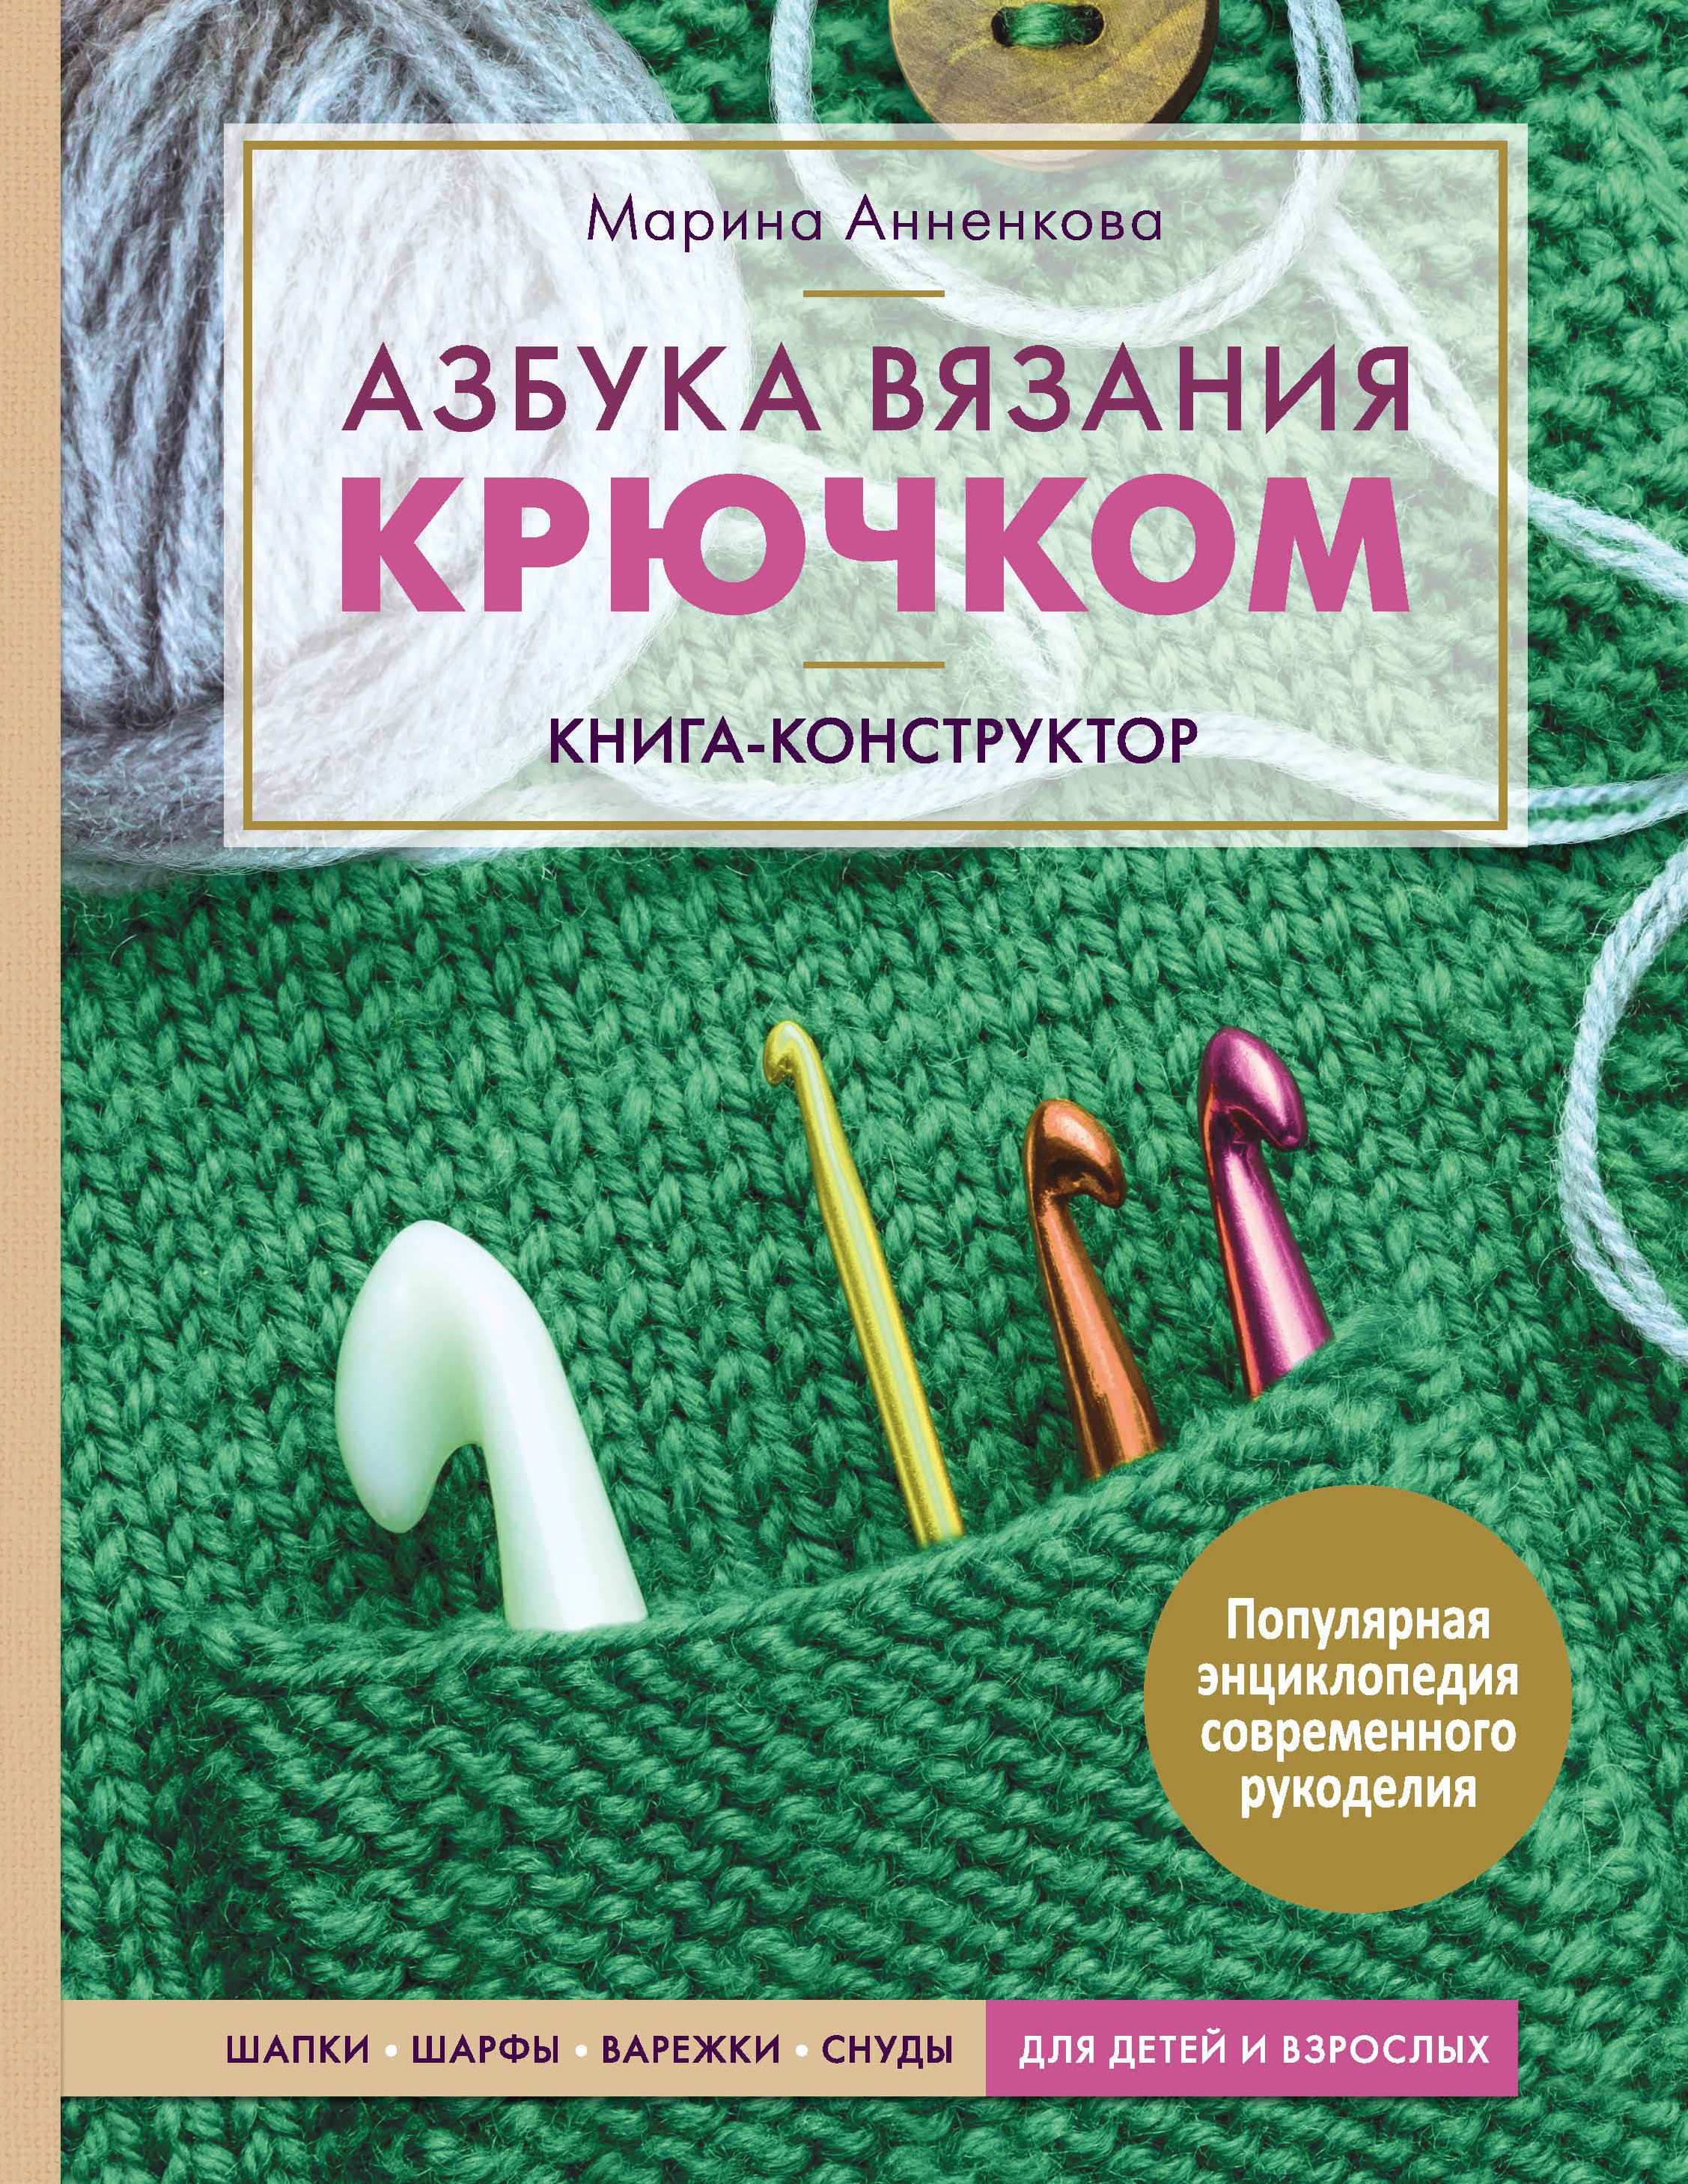 Курсы вязания на спицах в СПб для начинающих - 